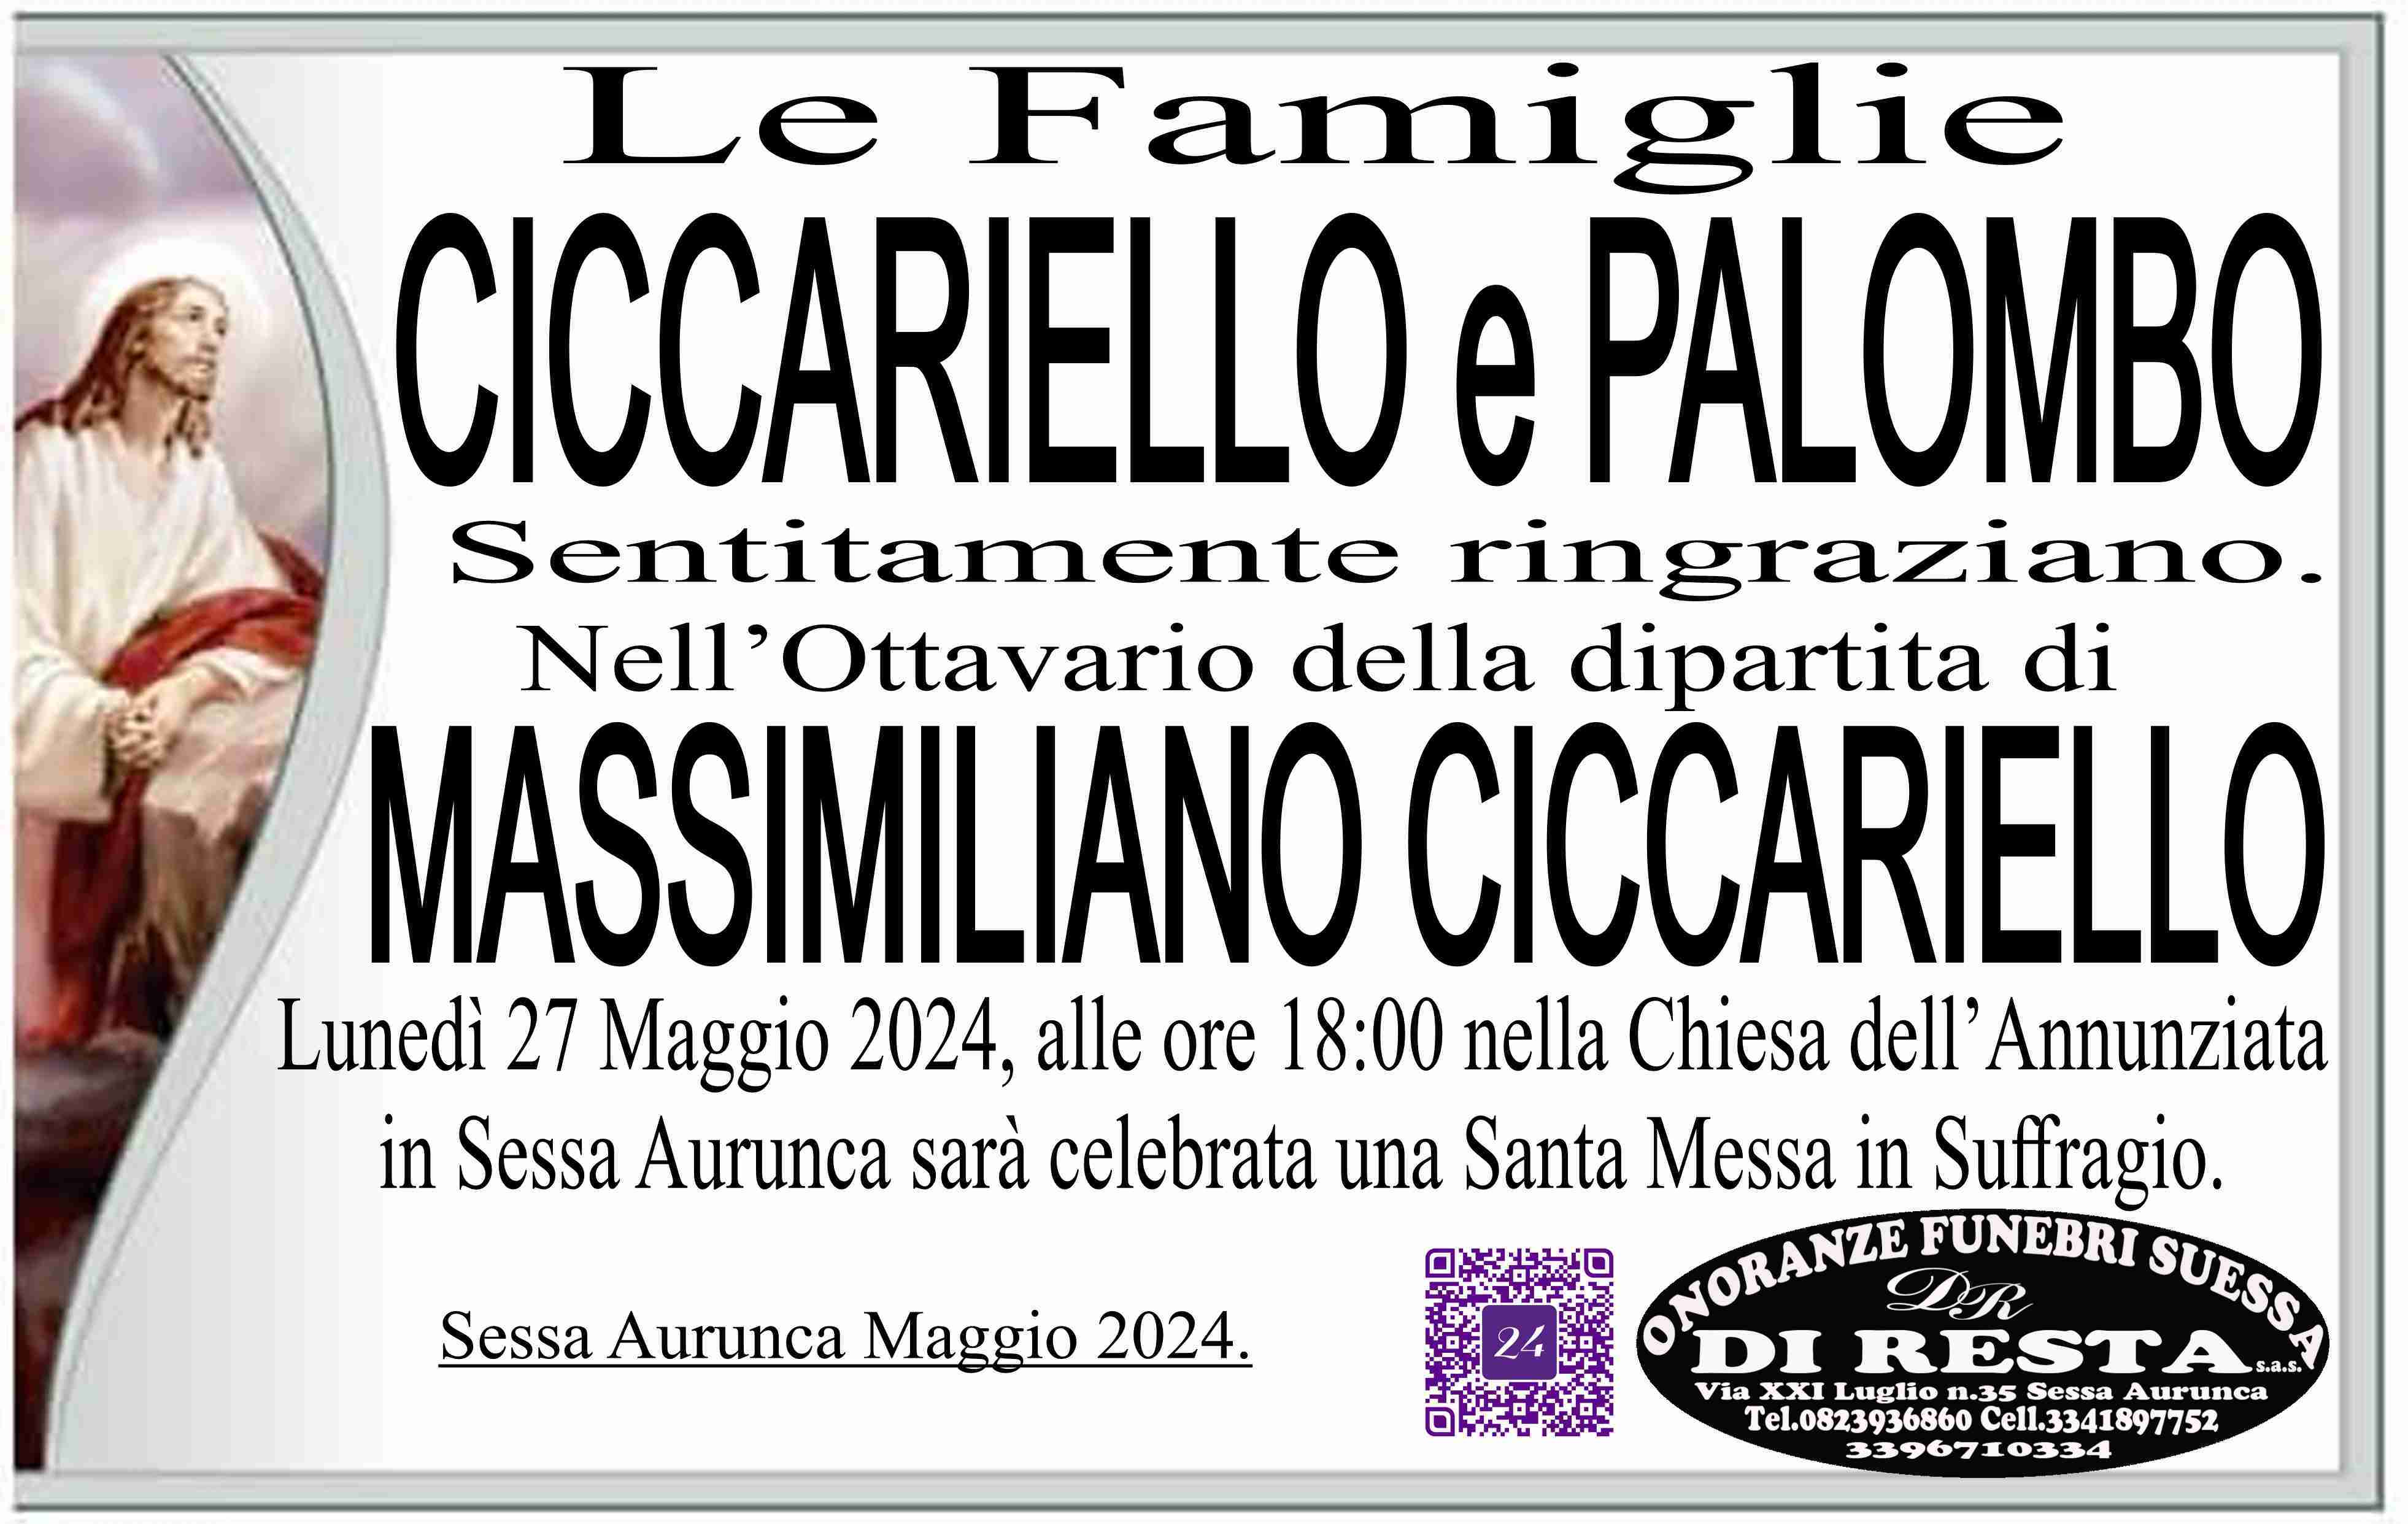 Massimiliano Ciccariello